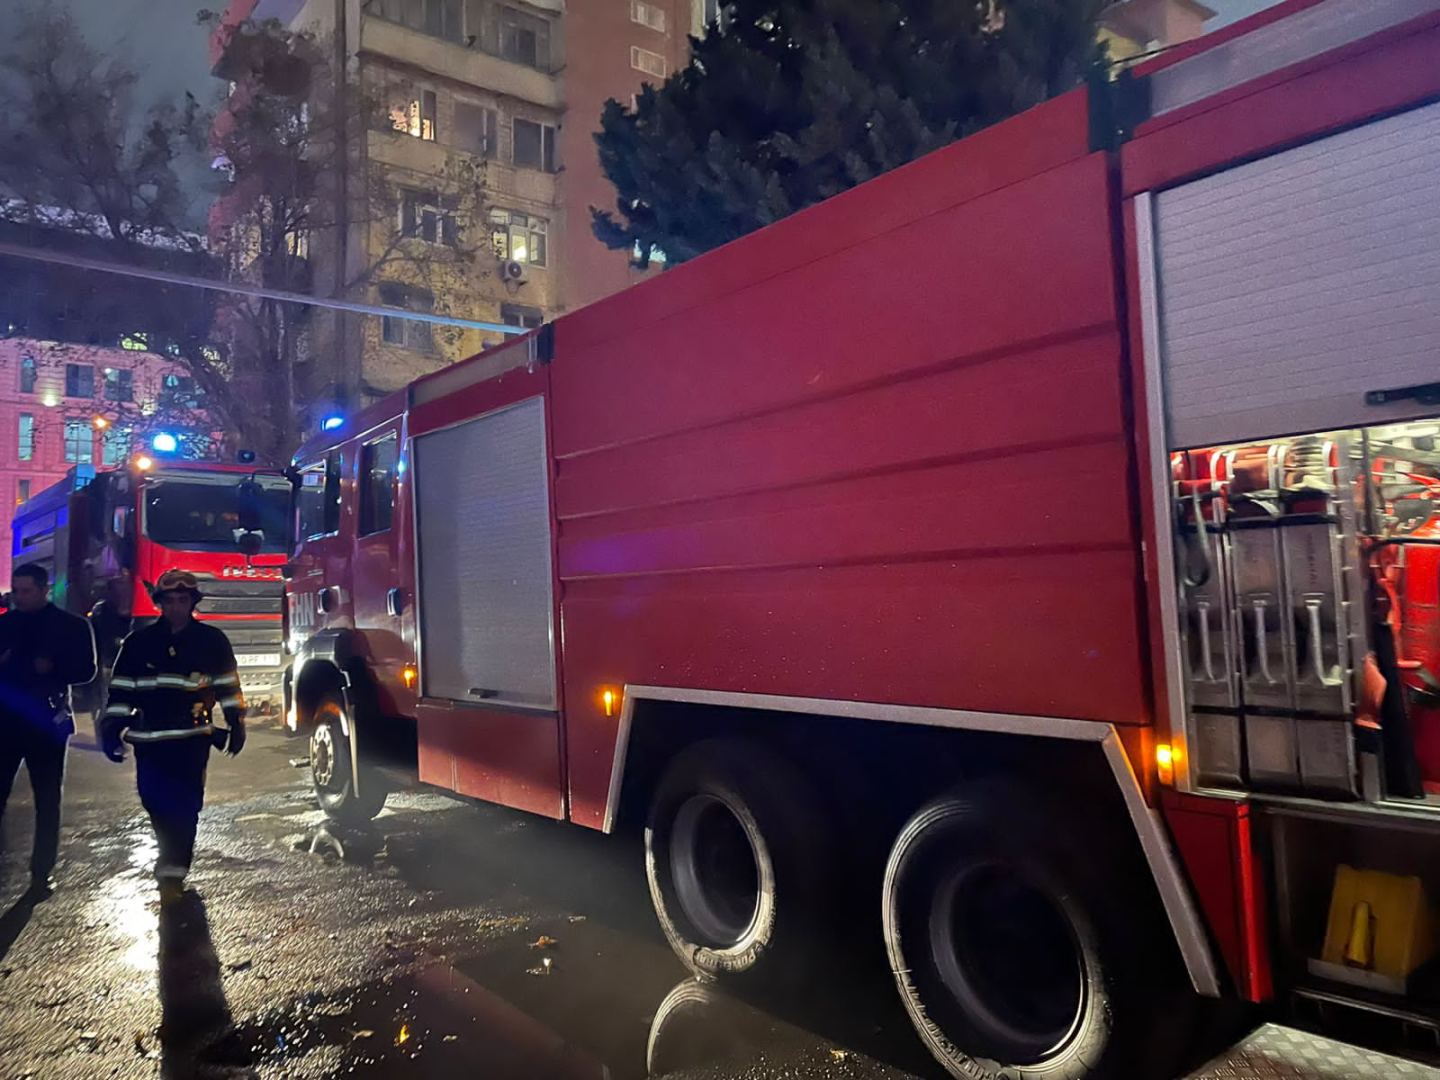 Пострадавших в результате пожара в Баку нет - МЧС